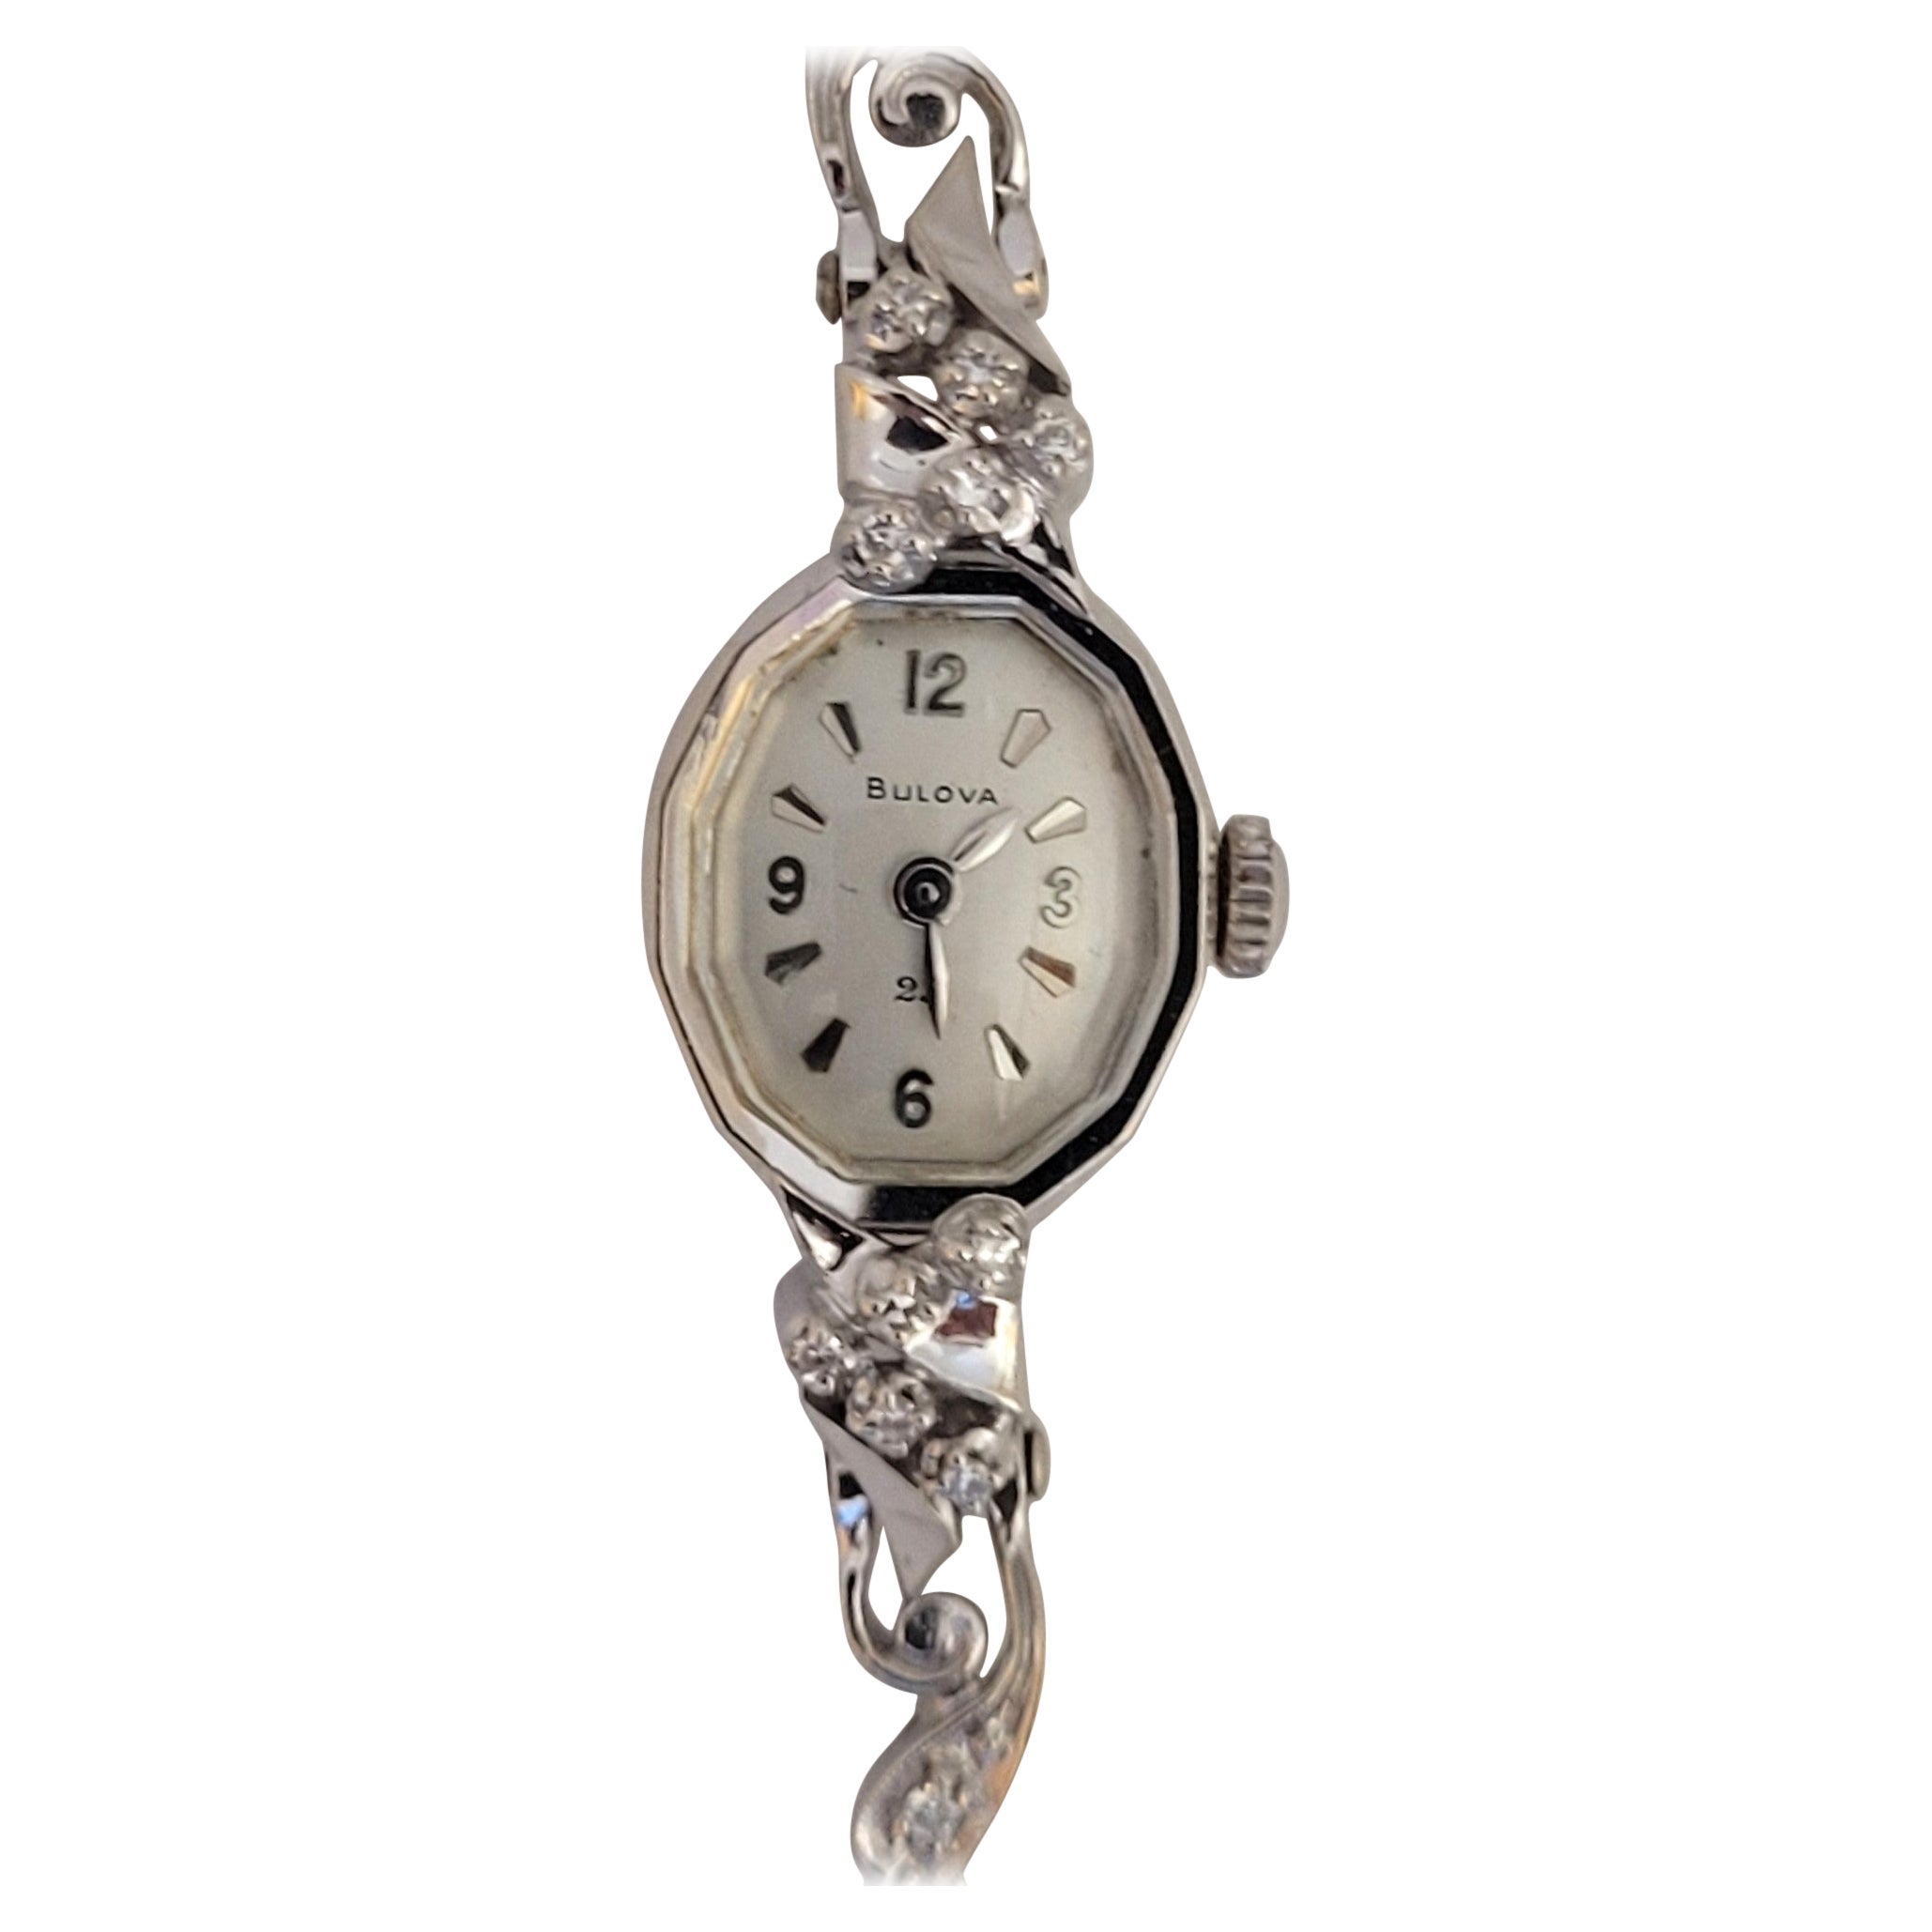 14kt Weißgold Bulova Diamant-Uhr Damen Serviced Working Warranty Art Deco